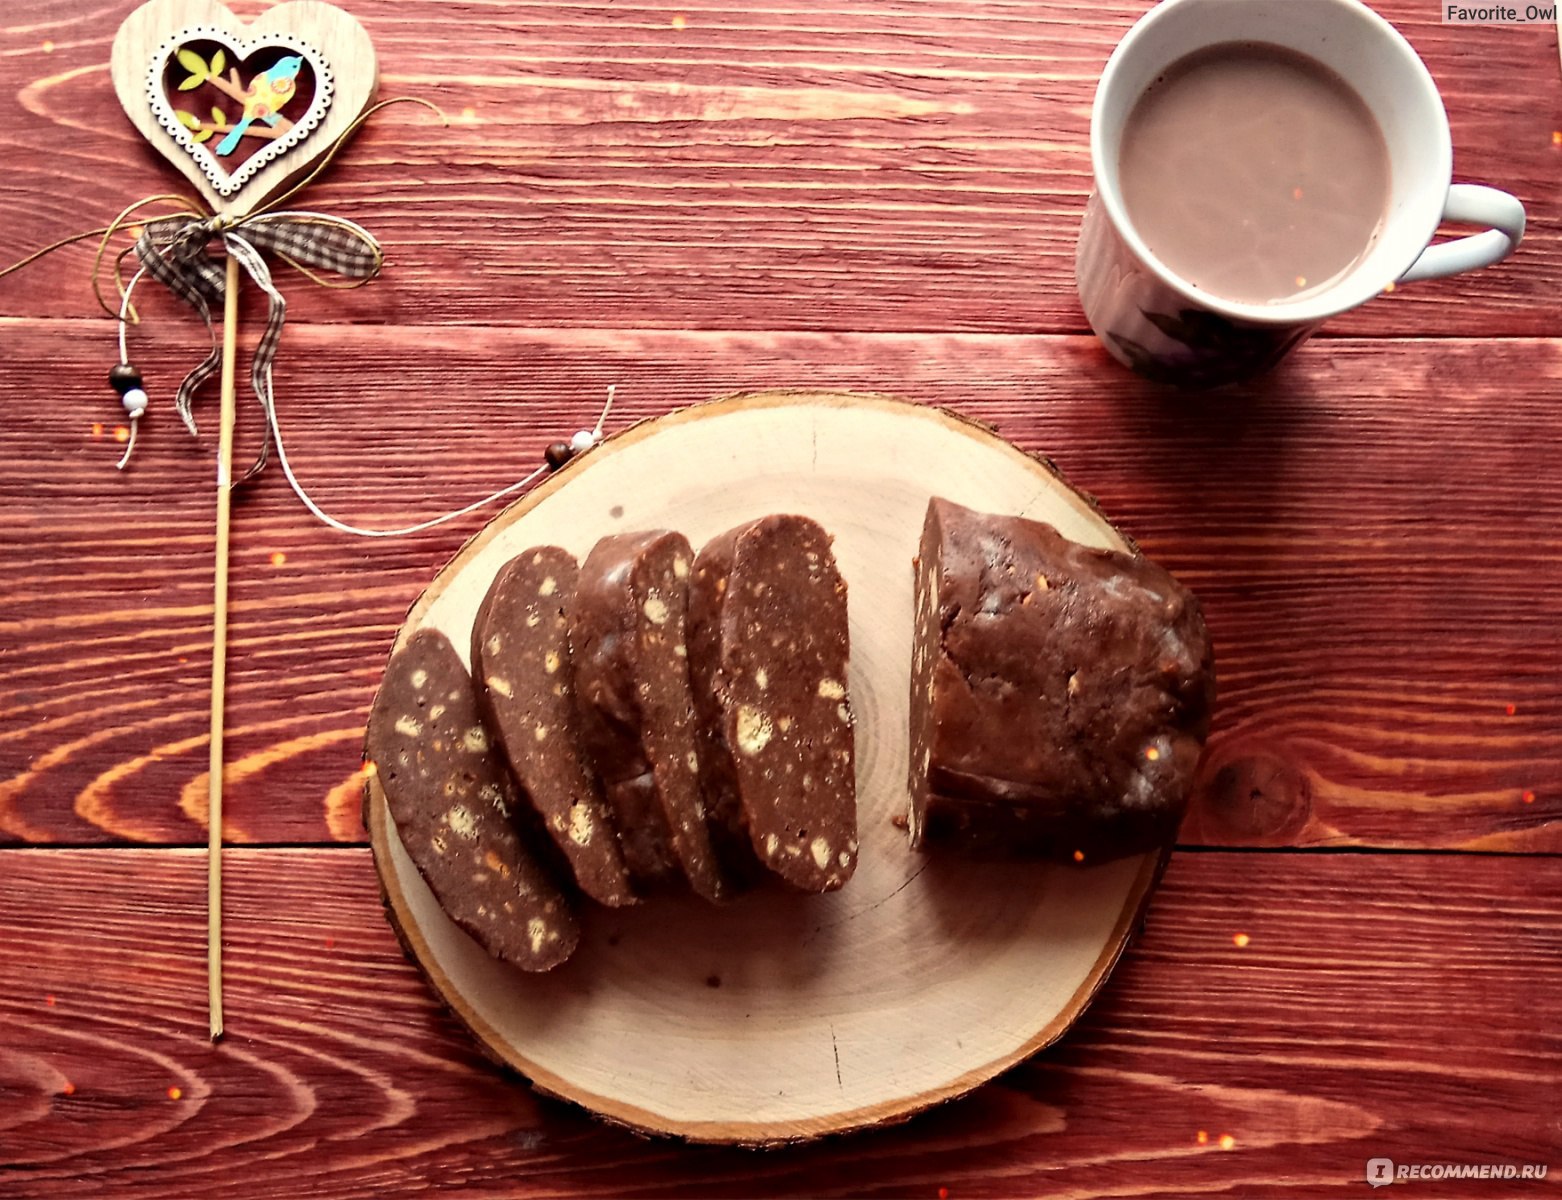 Рецепт картошки печенье сгущенка какао. Пирожное шоколадная колбаса. Колбаска из печенья со сгущенкой. Печенье с какао. Пирожное "картошка".